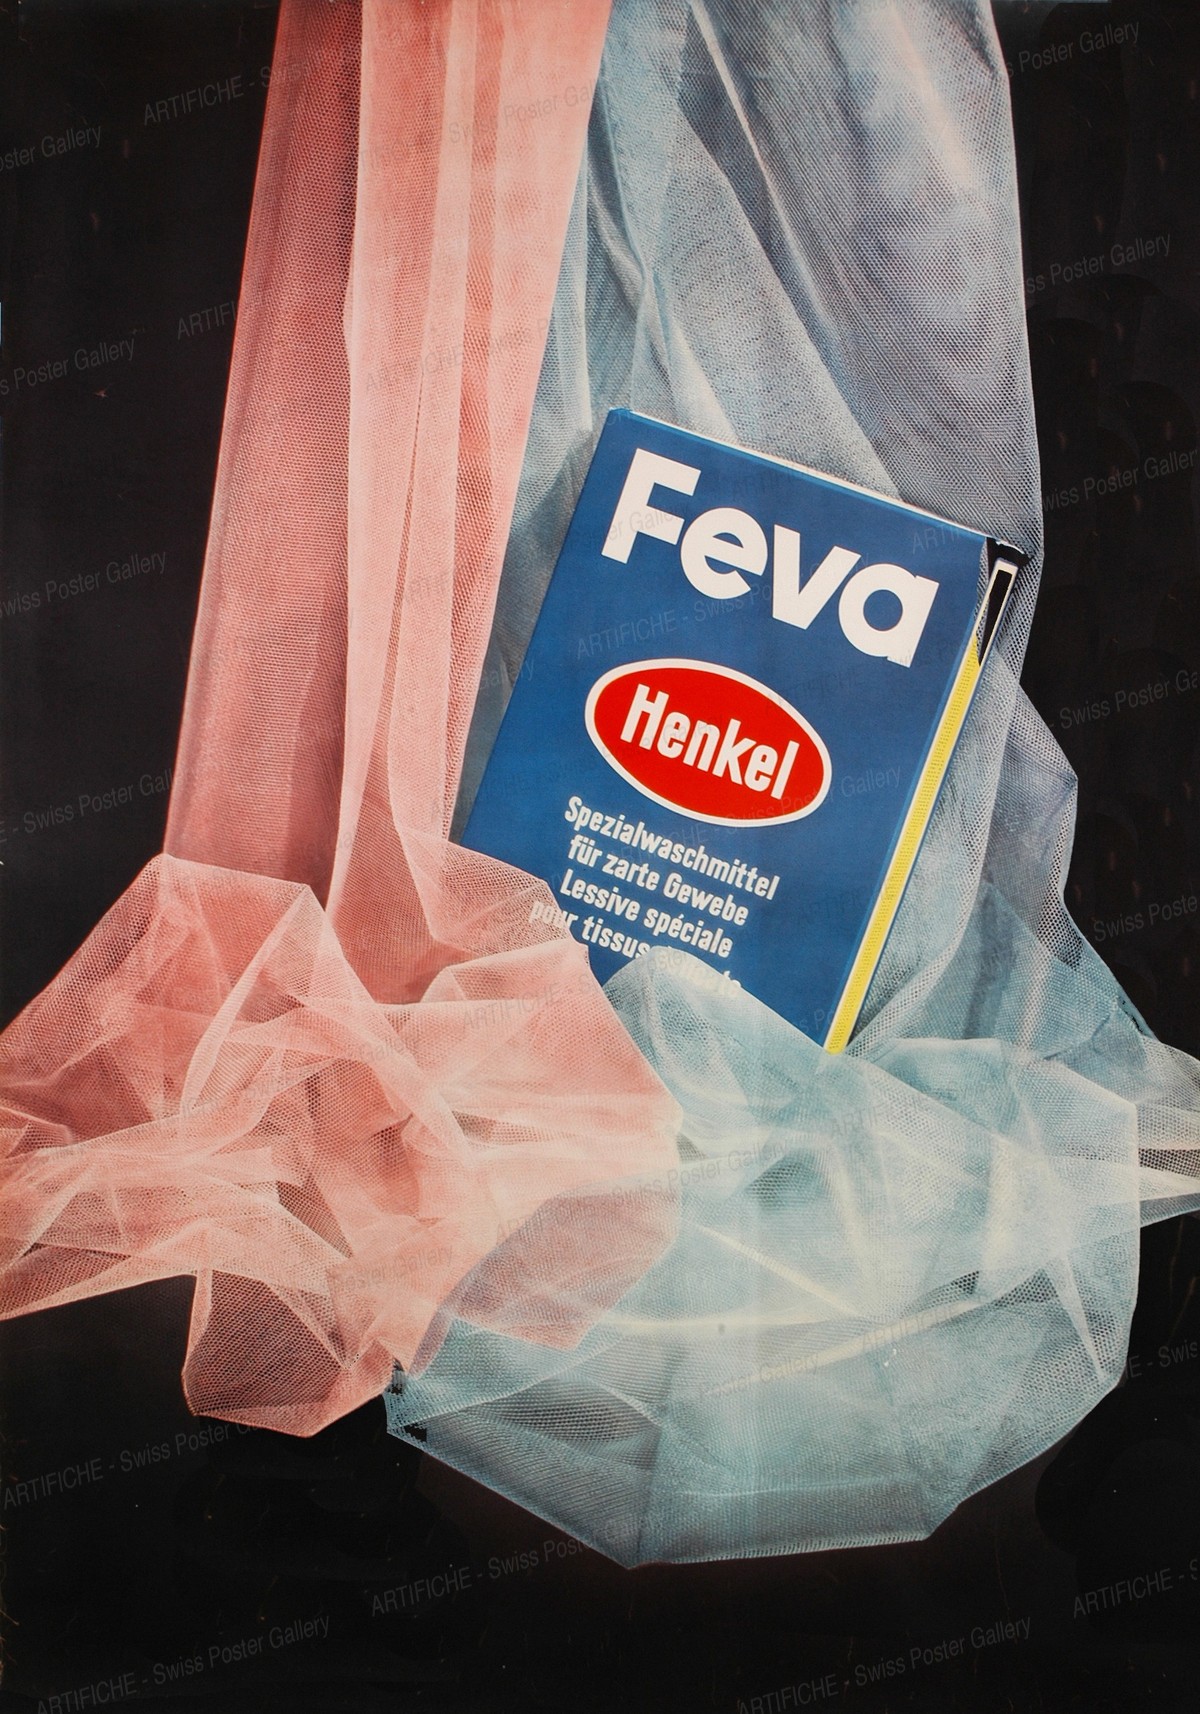 Feva – Henkel – Spezialwaschmittel für zarte Gewebe, Donald Brun